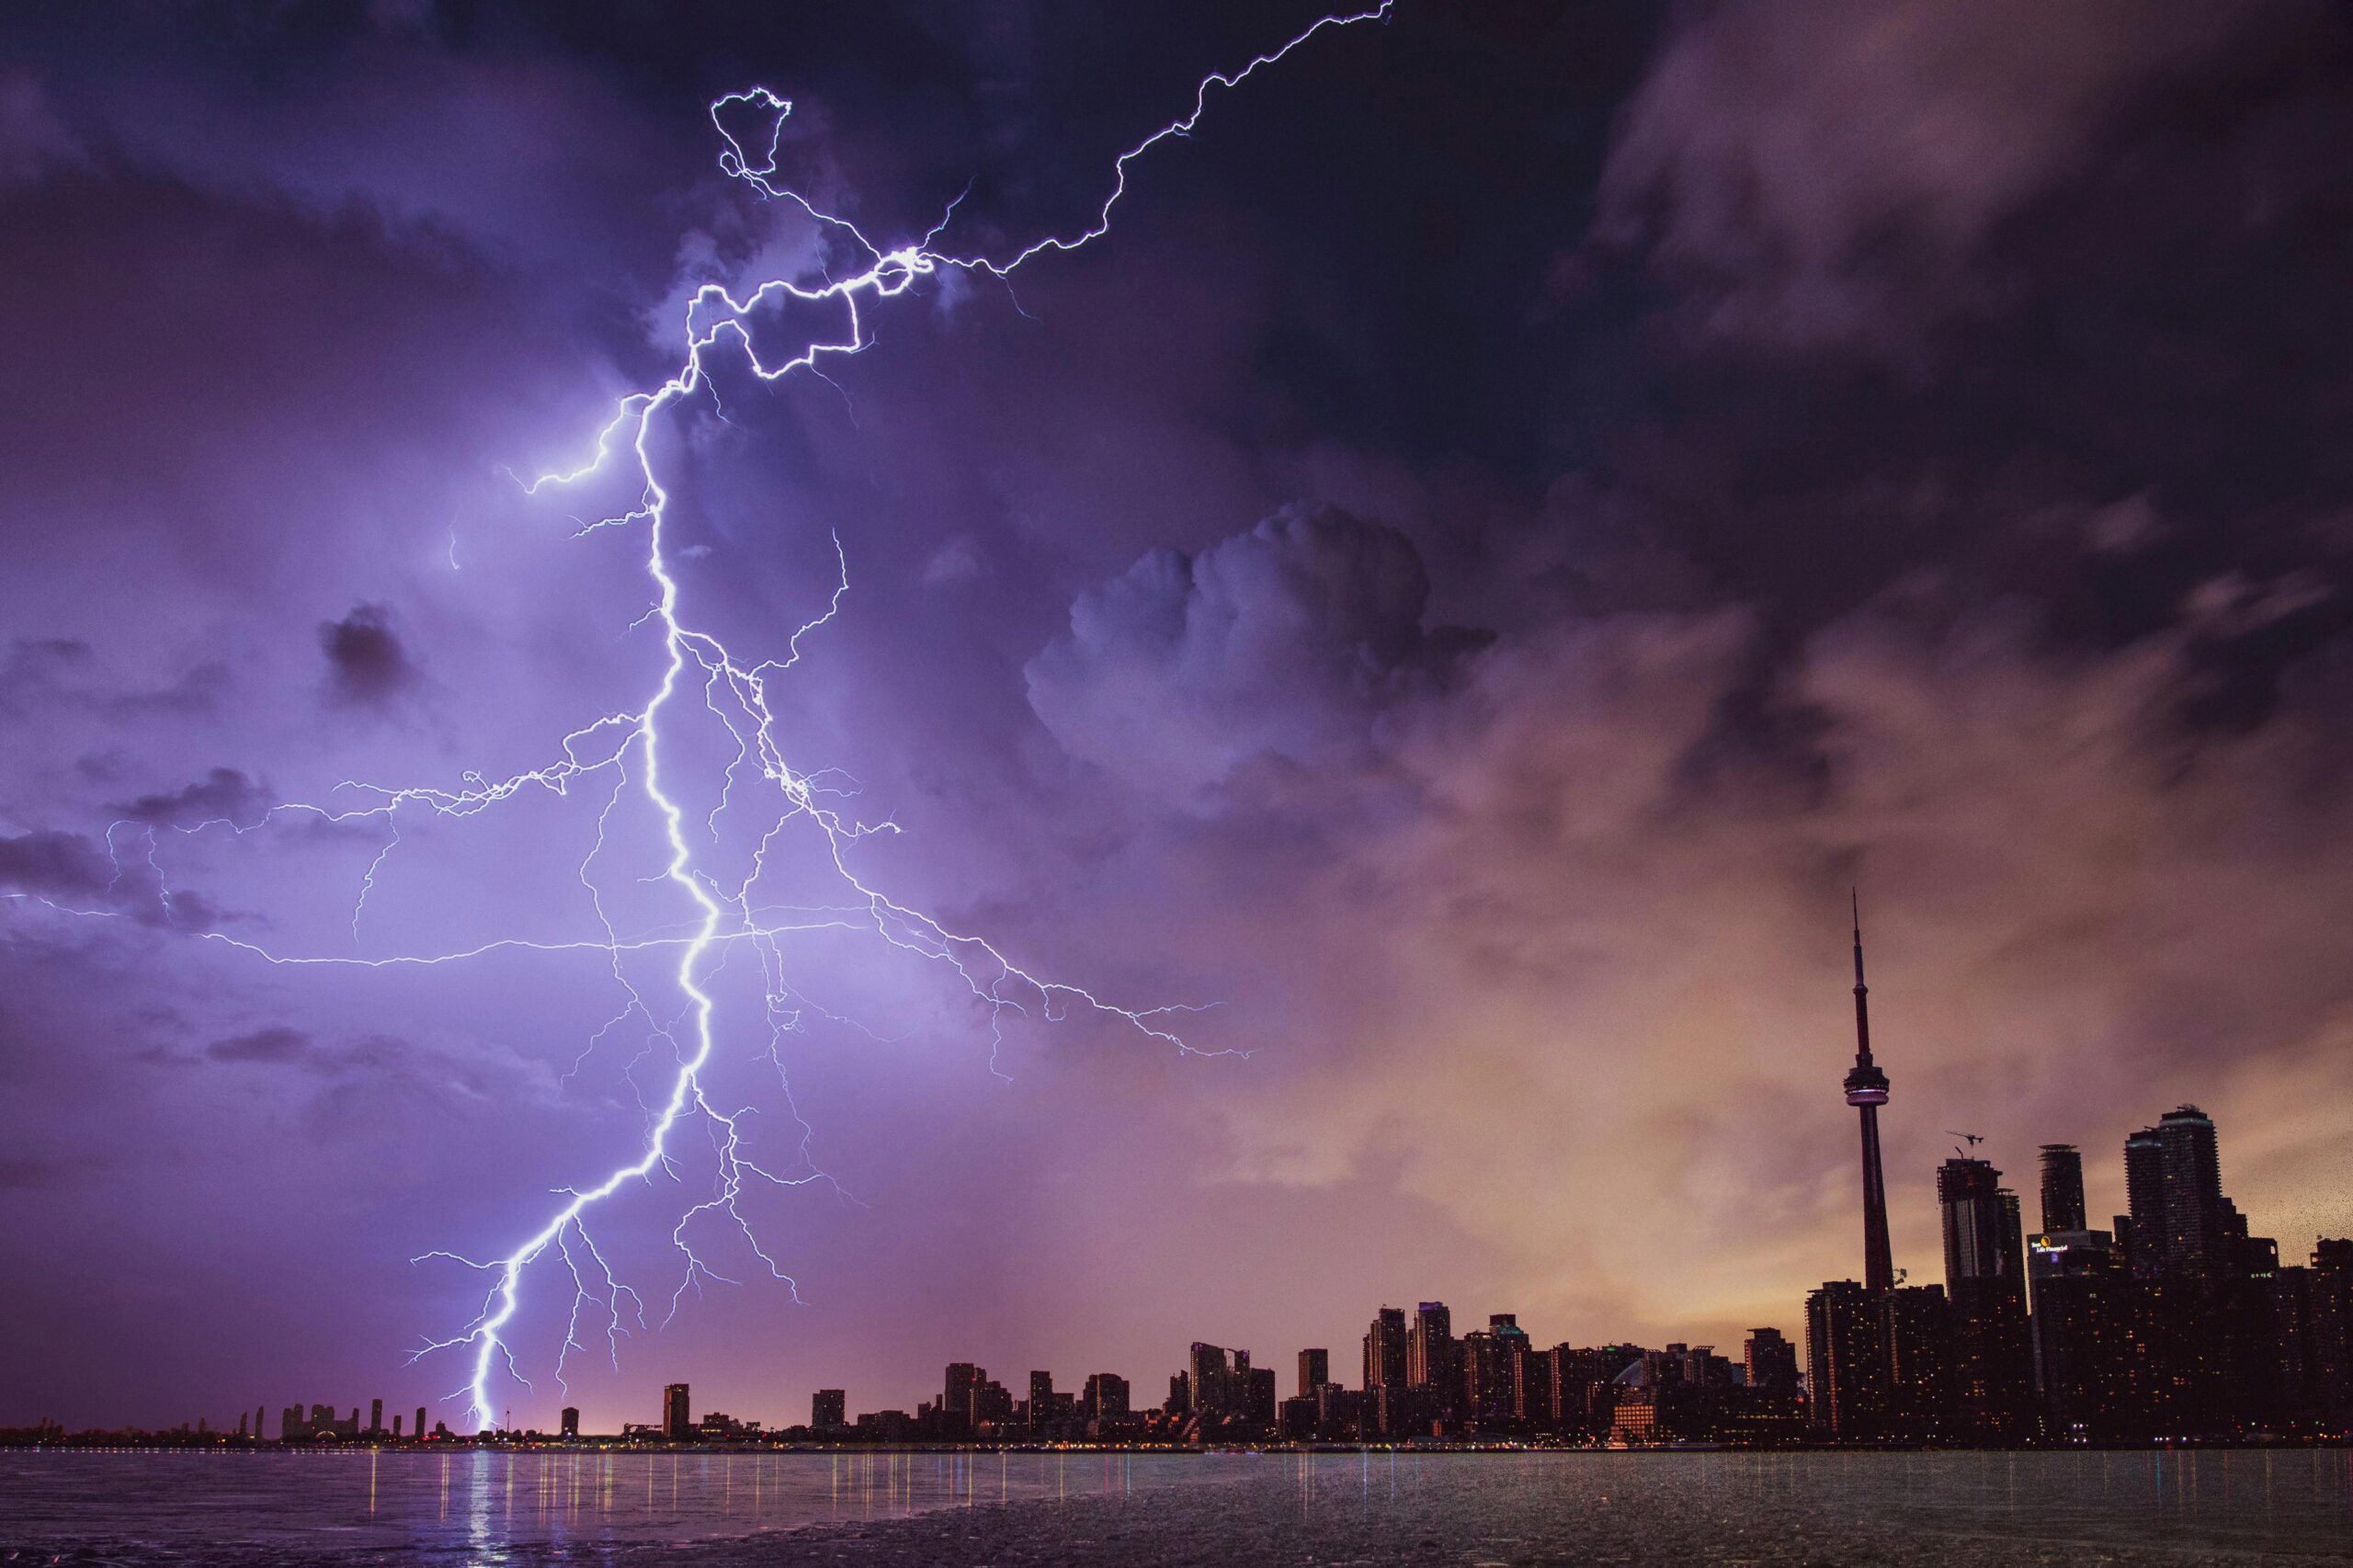 Lightning hitting lake Ontario during a thunderstorm in Toronto.